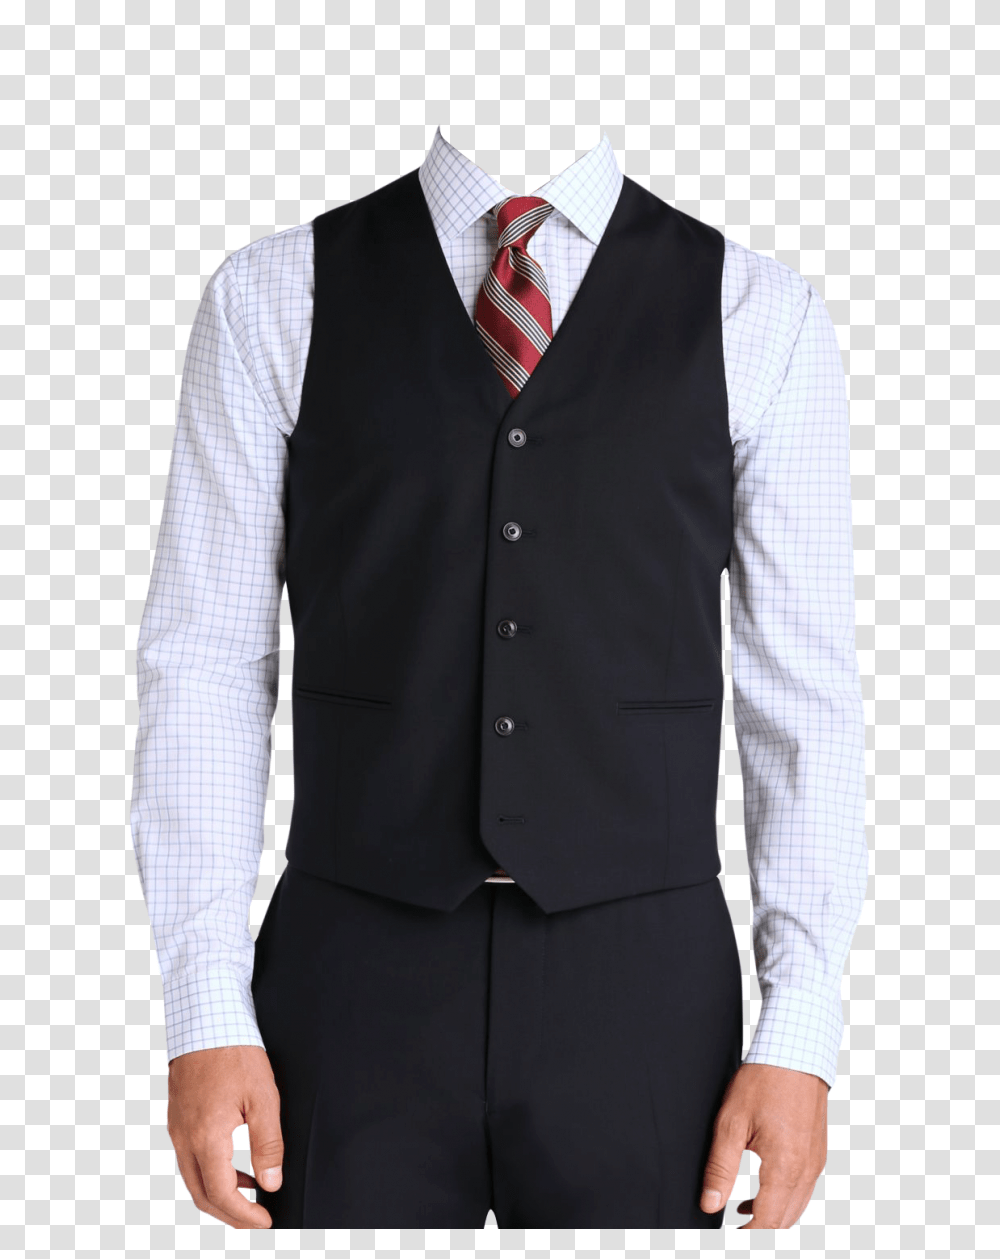 Men Suit Image, Person, Apparel, Shirt Transparent Png